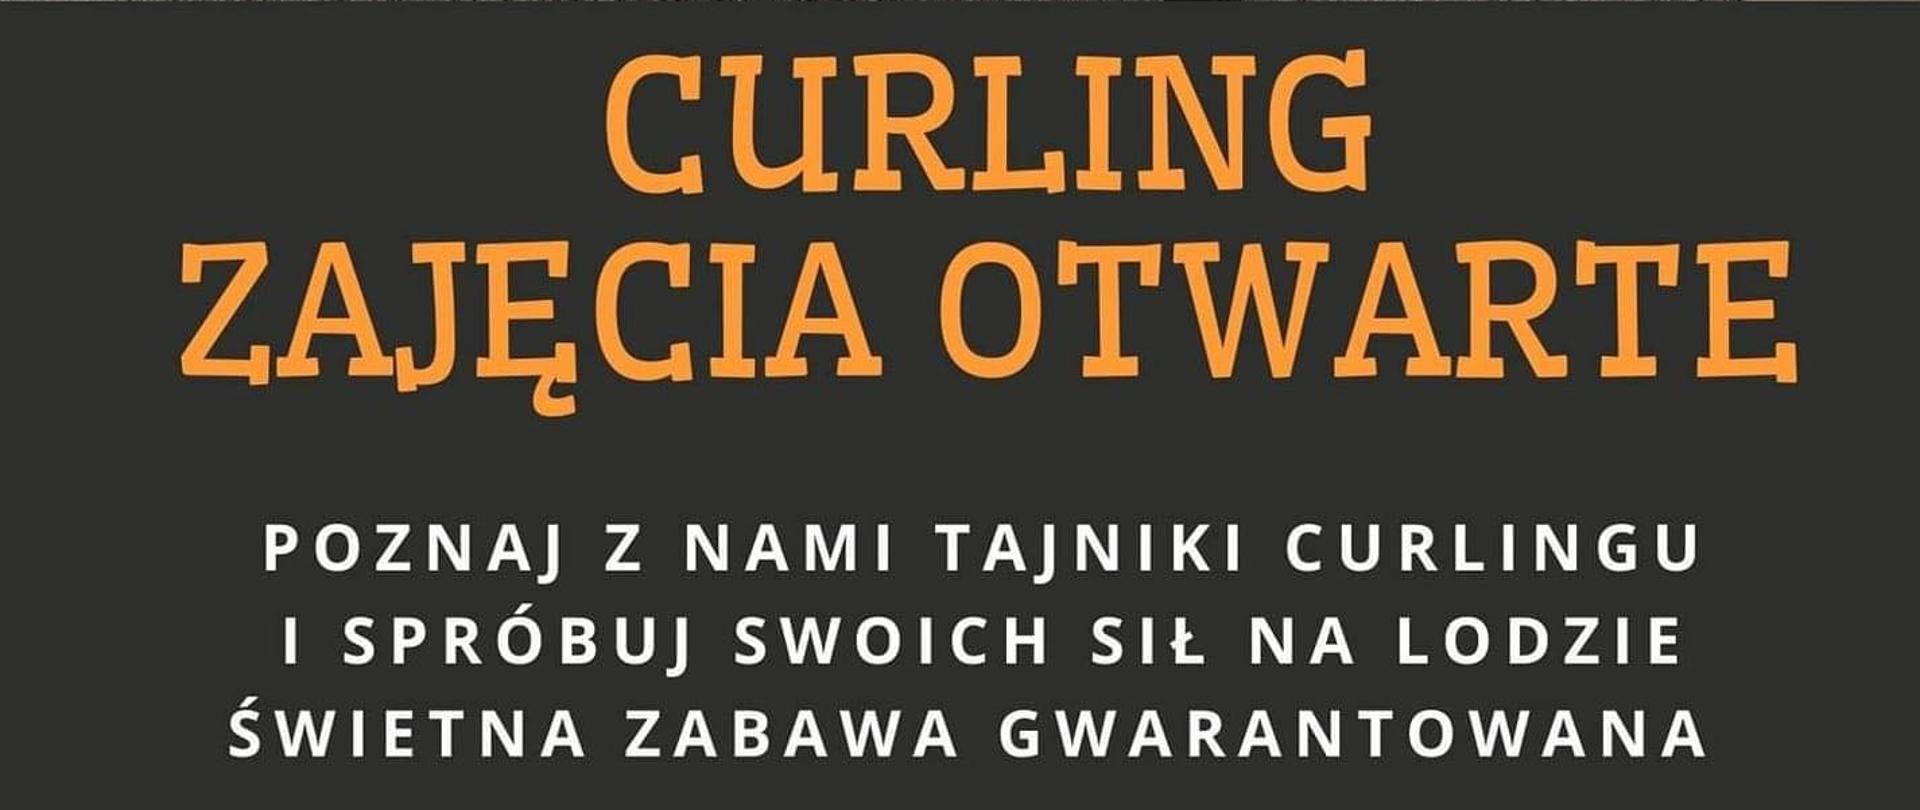 Plakat promujący zajęcia otwarte z curlingu